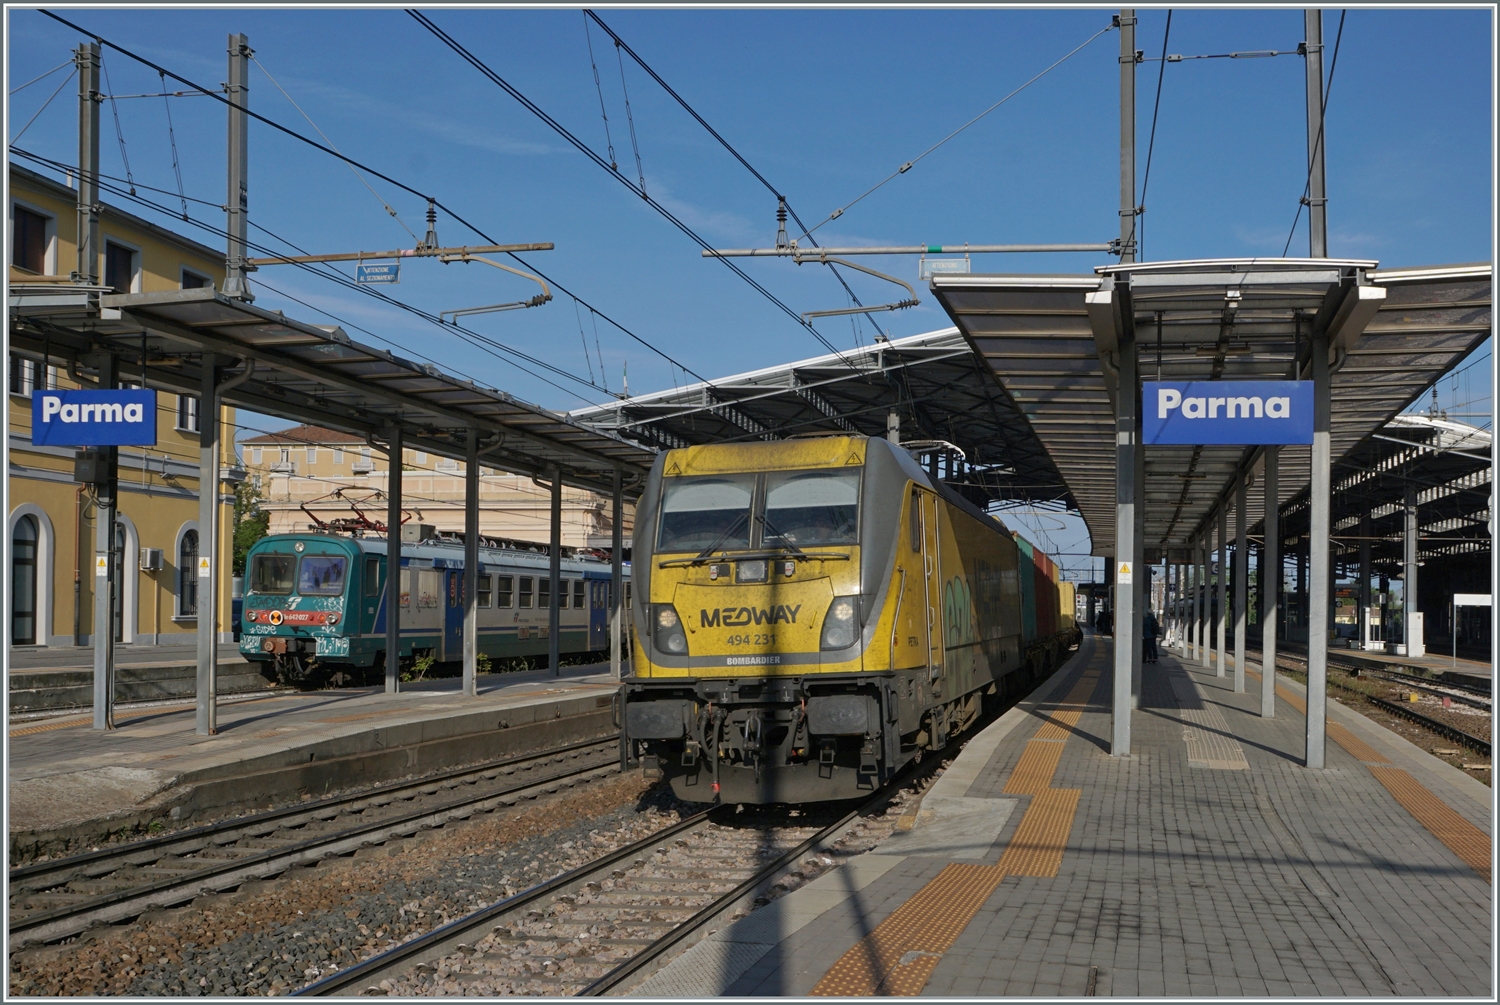 Zum vorhergehenden Bild aus Parma passend: Noch einmal die der Medway 494 231, die mit ihrem Güterzug durch Parma fährt, diesmal als  Hauptmotiv .

18. April 2023